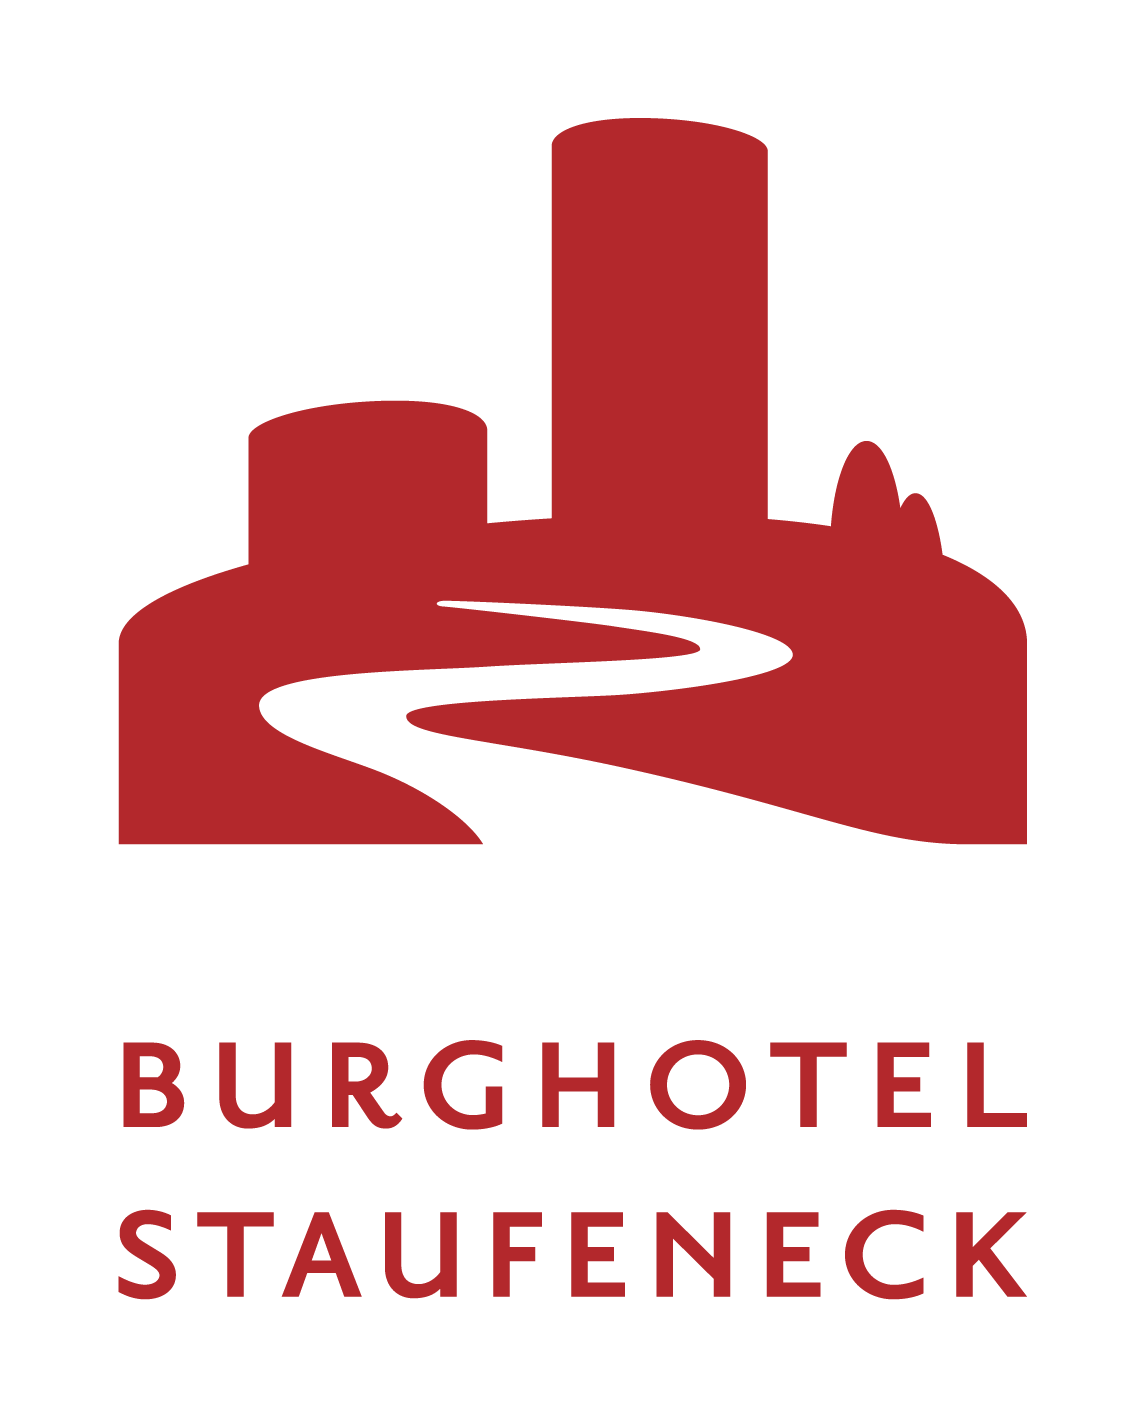 Burghotel und Restaurant Staufeneck GmbH & Co. KG